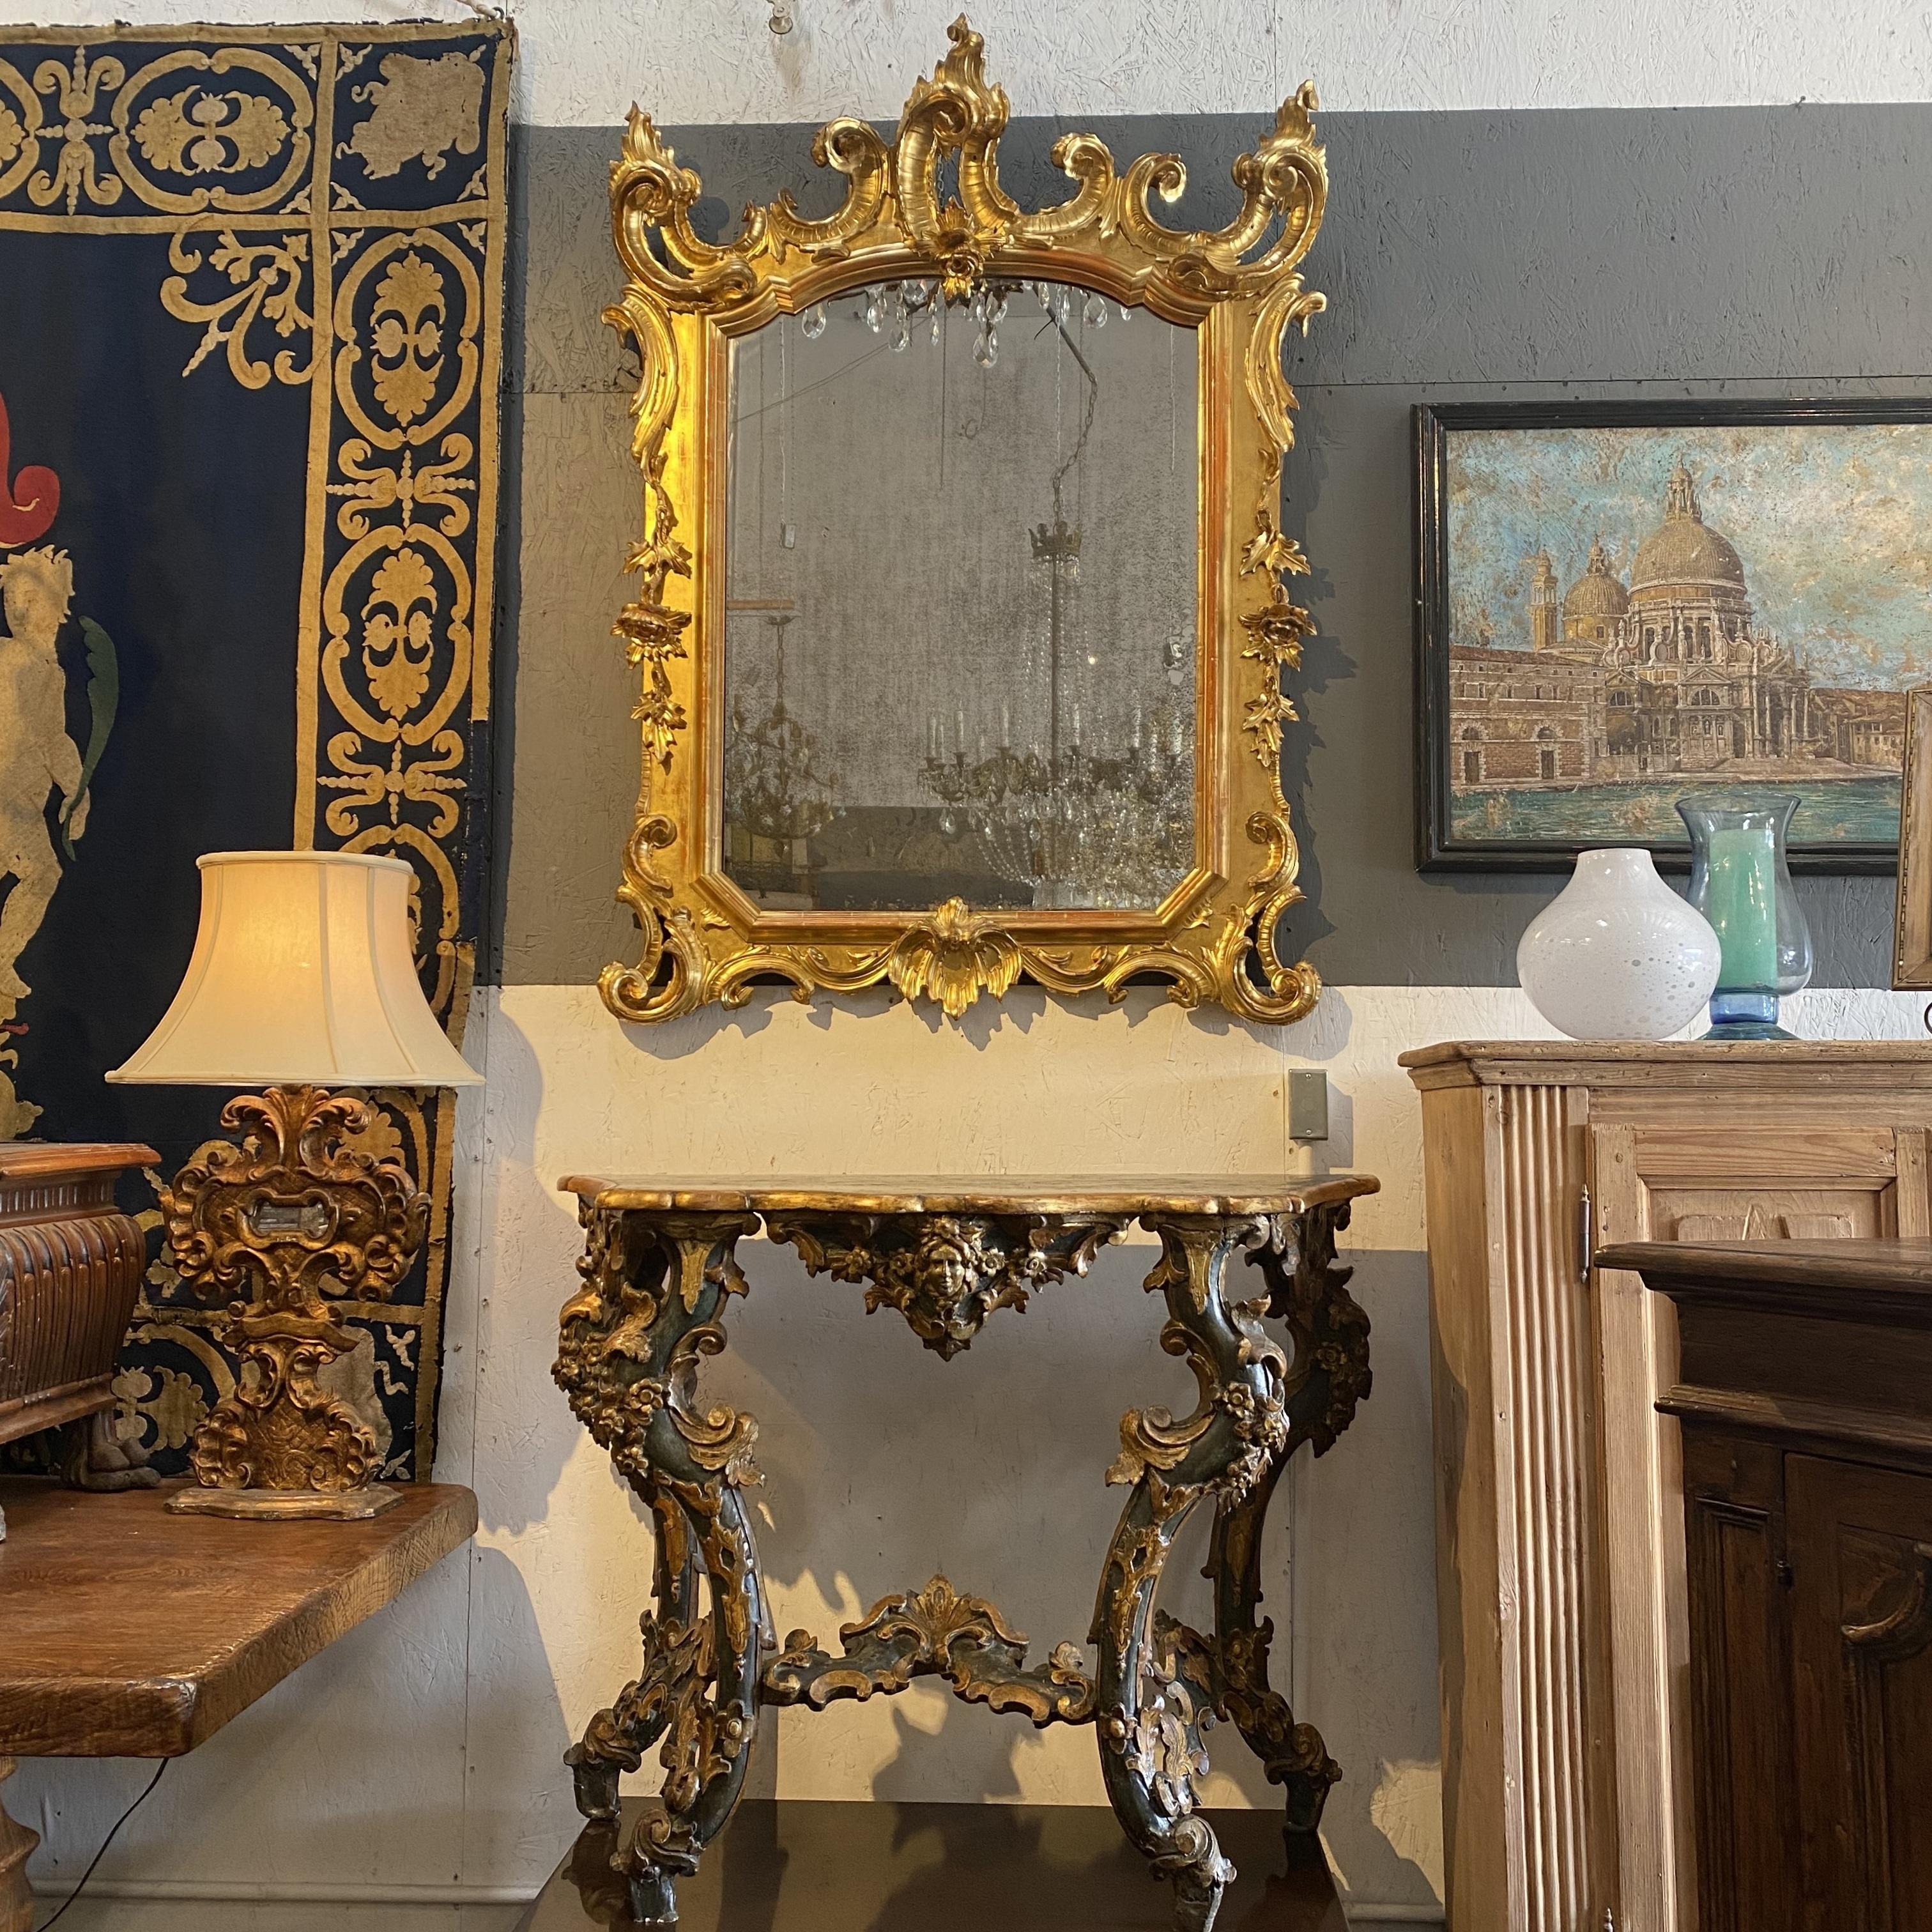 Spectaculaire cadre de miroir de style baroque italien, en bois magnifiquement sculpté et doré avec des volutes végétales, des fleurs et des feuilles, et des sommets couronnés. Un mélange glamour de détails grandioses et délicieux, qui ne manquera